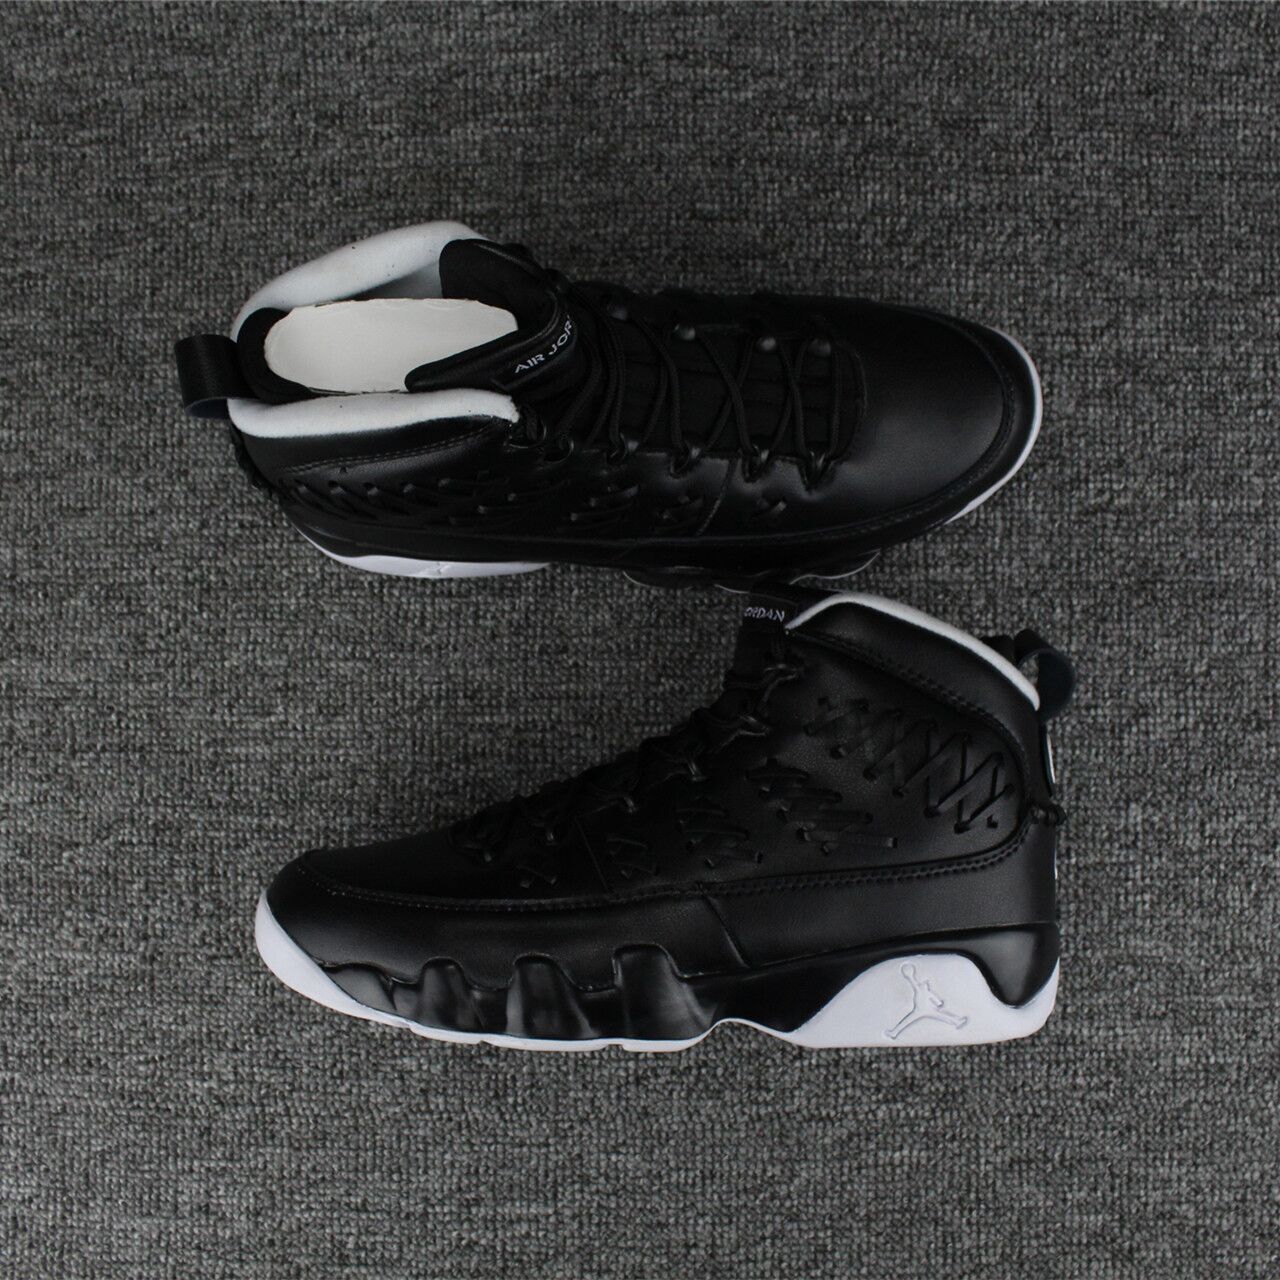 2017 Jordan 9 Knit Black White Shoes